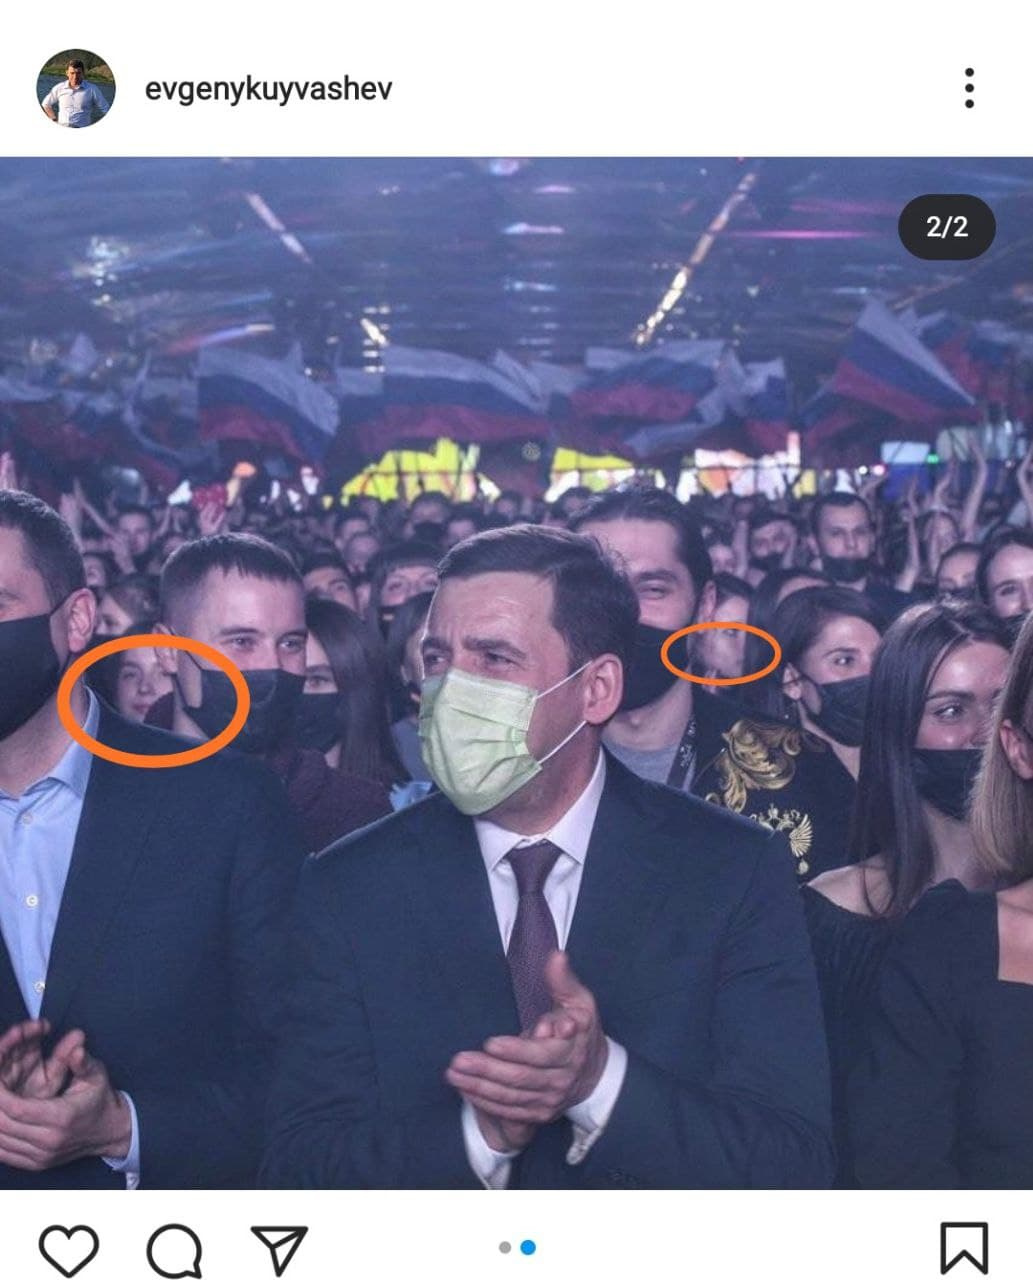 Даже на фотографиях, которые опубликовал губернатор в своем Instagram, налицо нарушение установленного им же режима